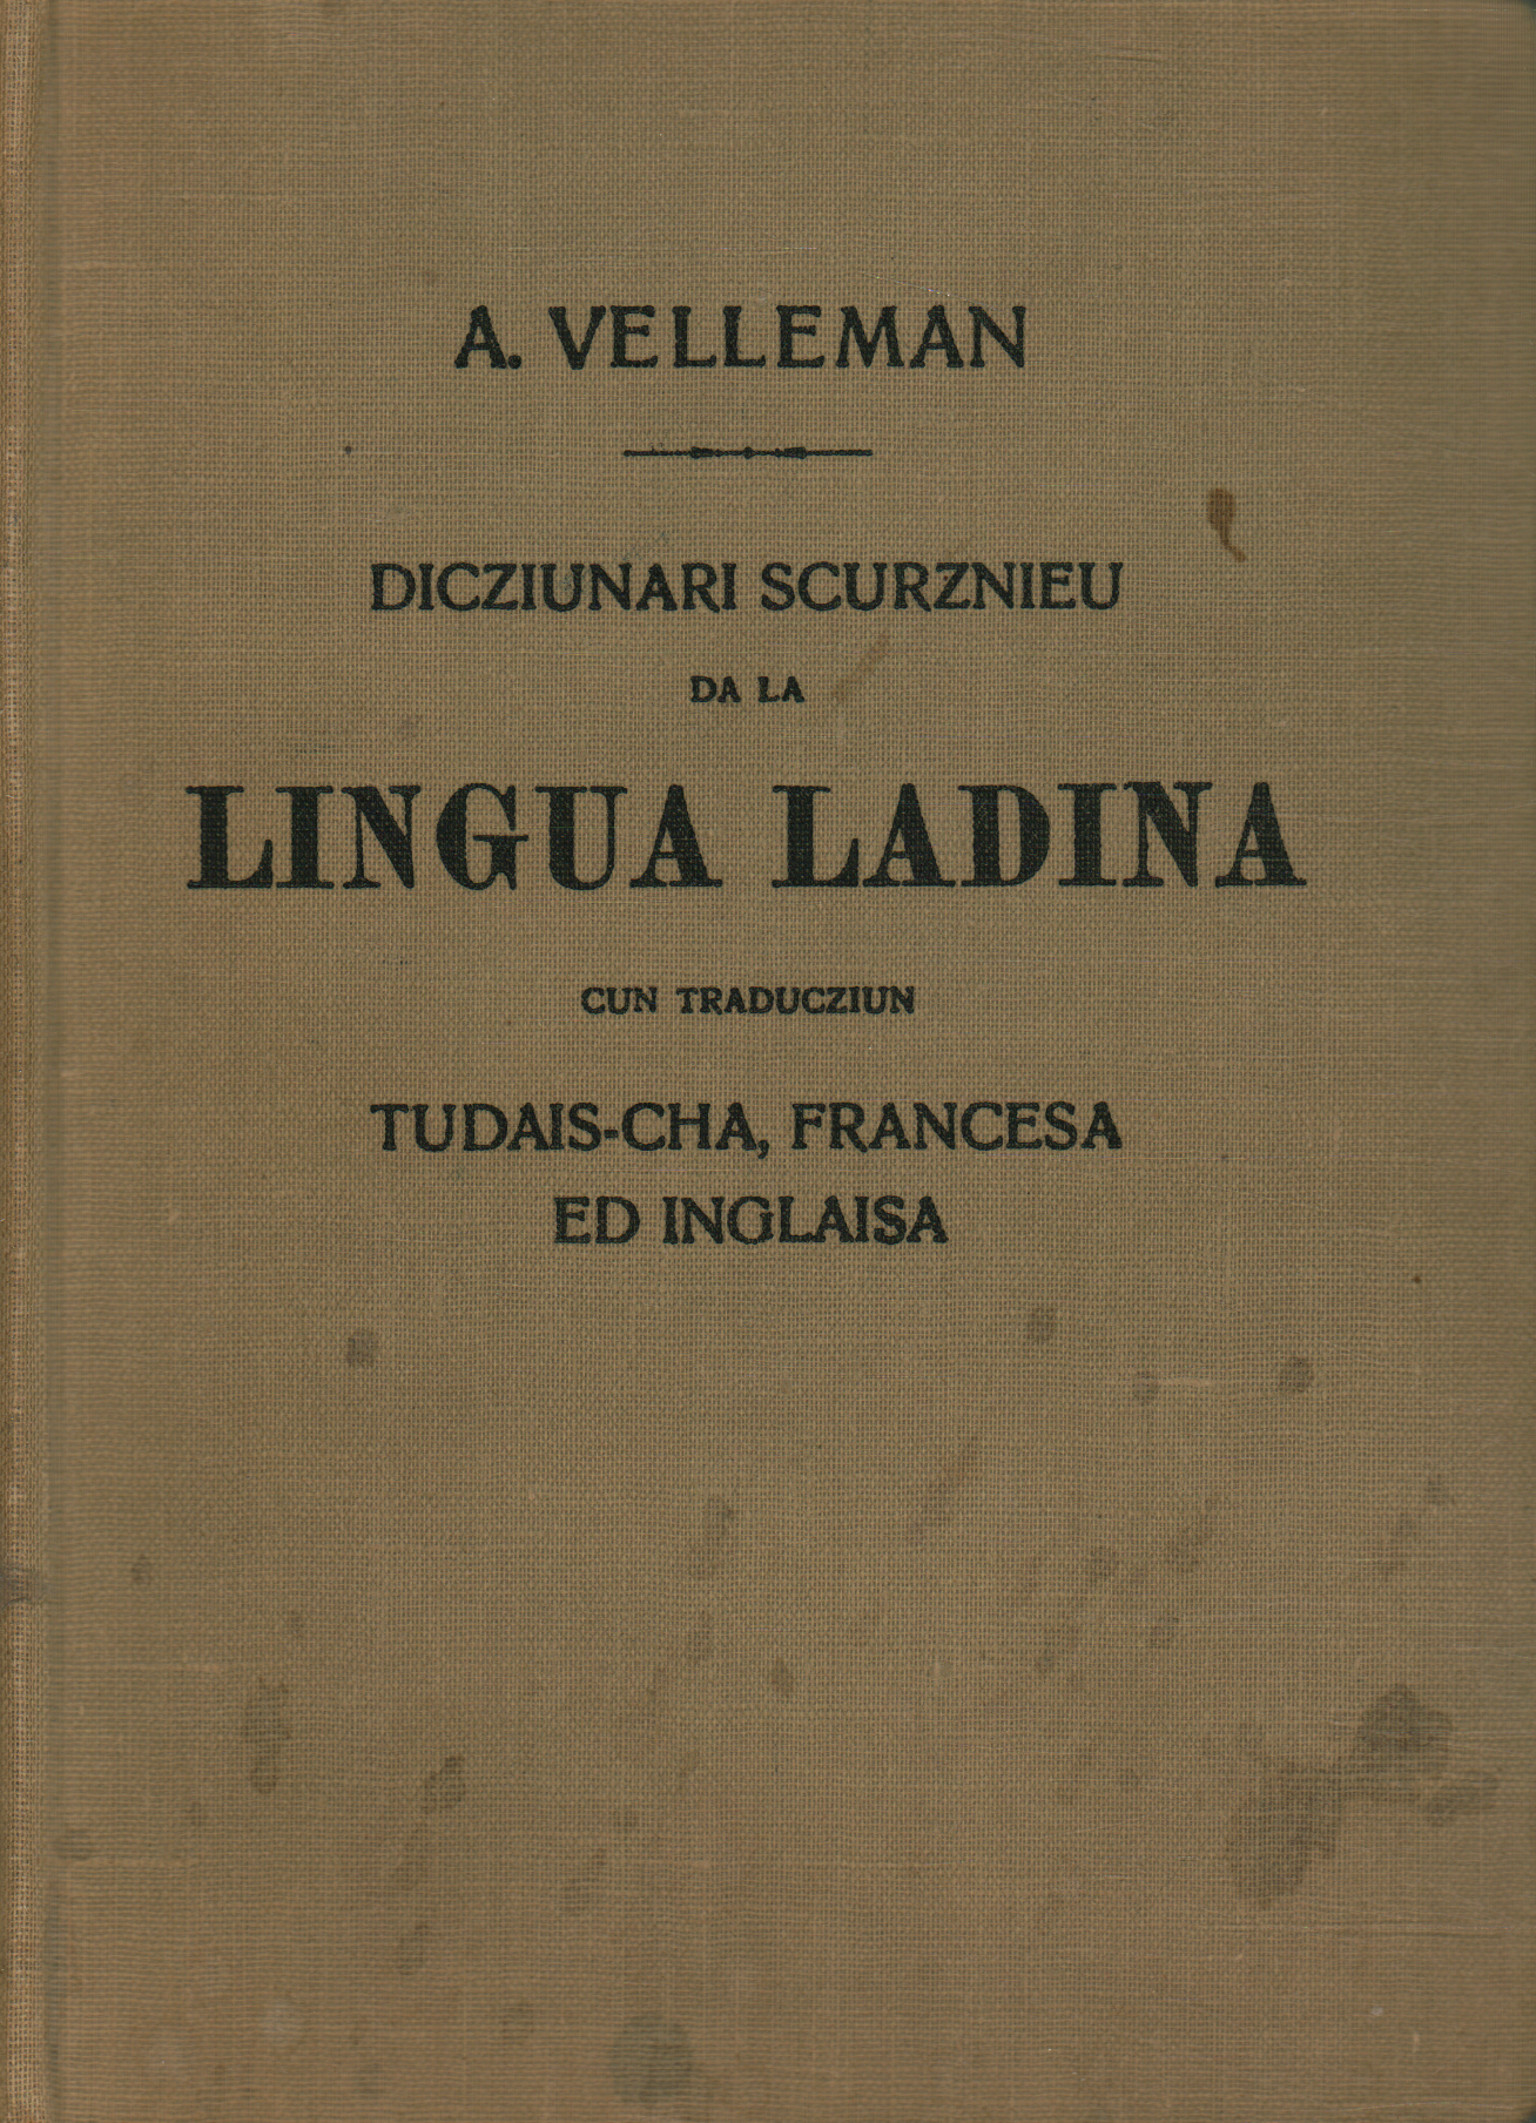 Dictionnaire abrégé du ladin (ou r, Dicziunari Scurznieu da la lingua lad, Dicziunari Scurznieu da la lingua Ladina